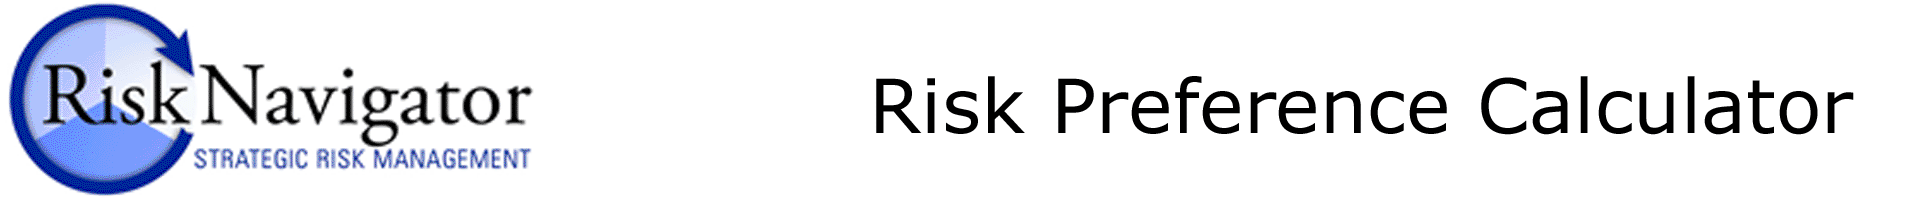 Risk Preference Calculator